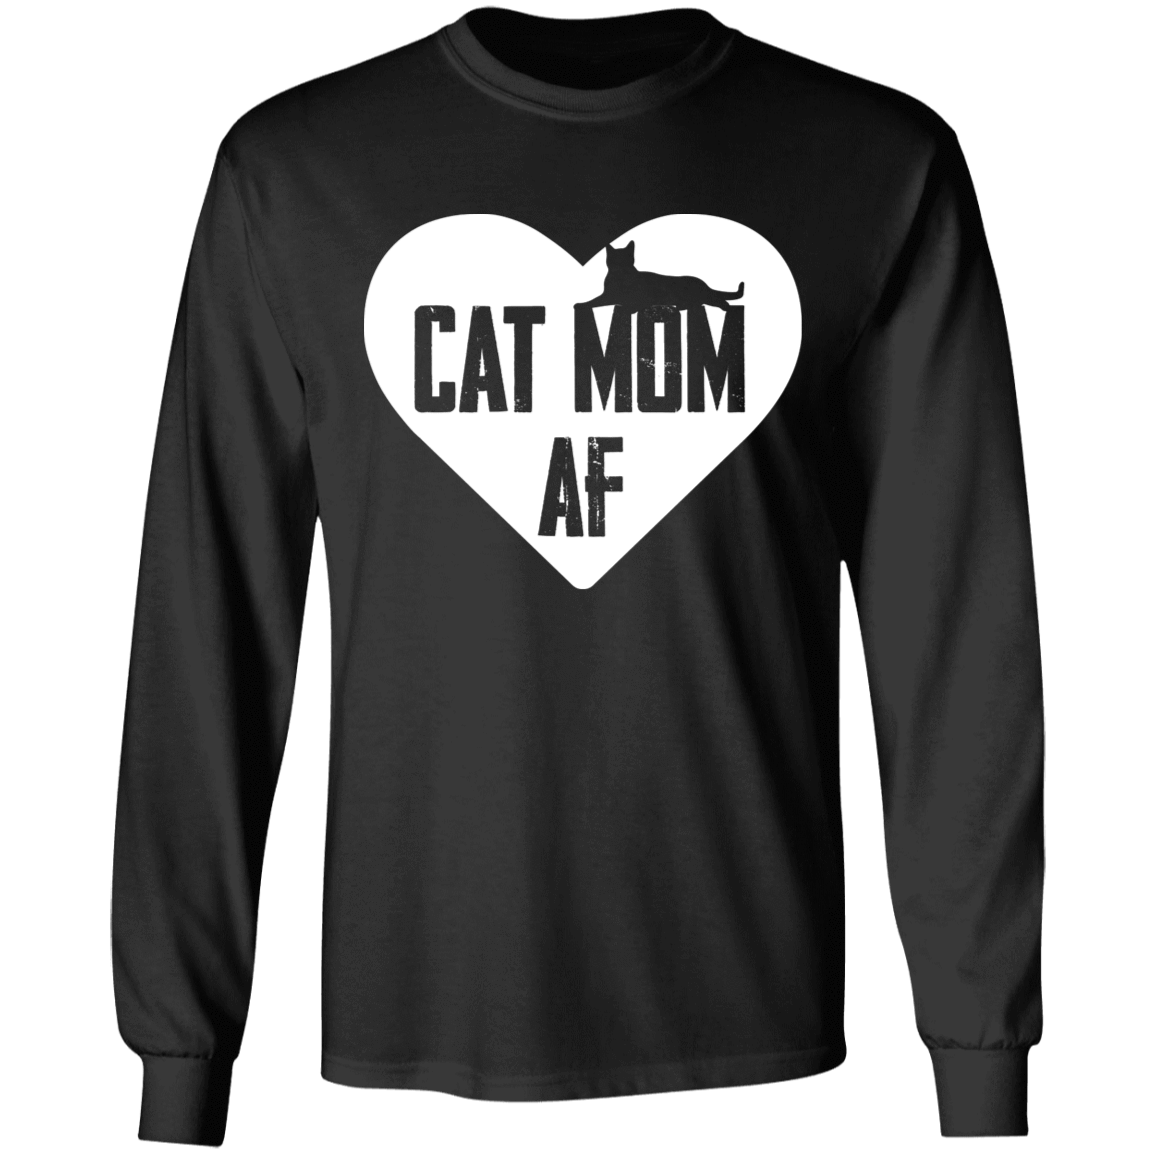 Cat Mom AF - Long Sleeve T Shirt.